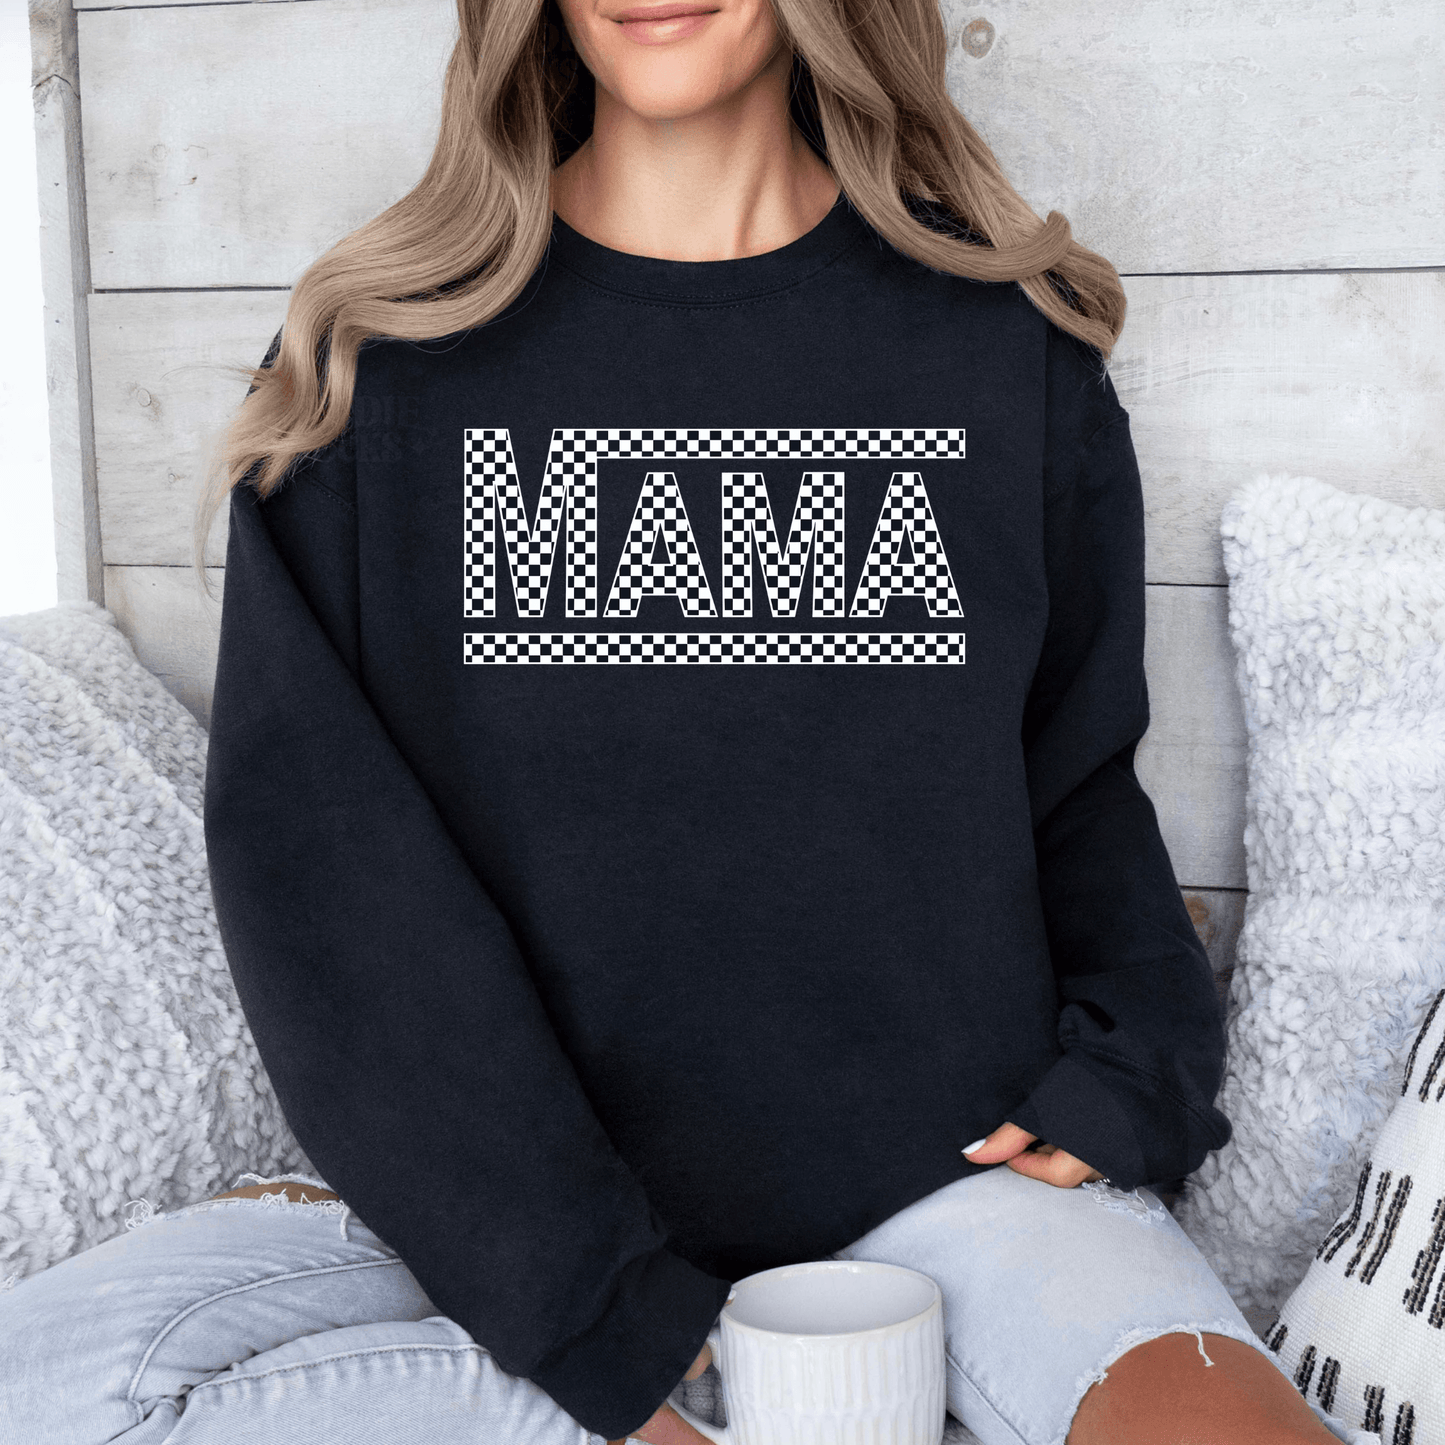 Retro-Schachbrett 'MAMA' Sweatshirt - Bequemes Crewneck für Mütter - Geschenk zum Muttertag - GiftHaus